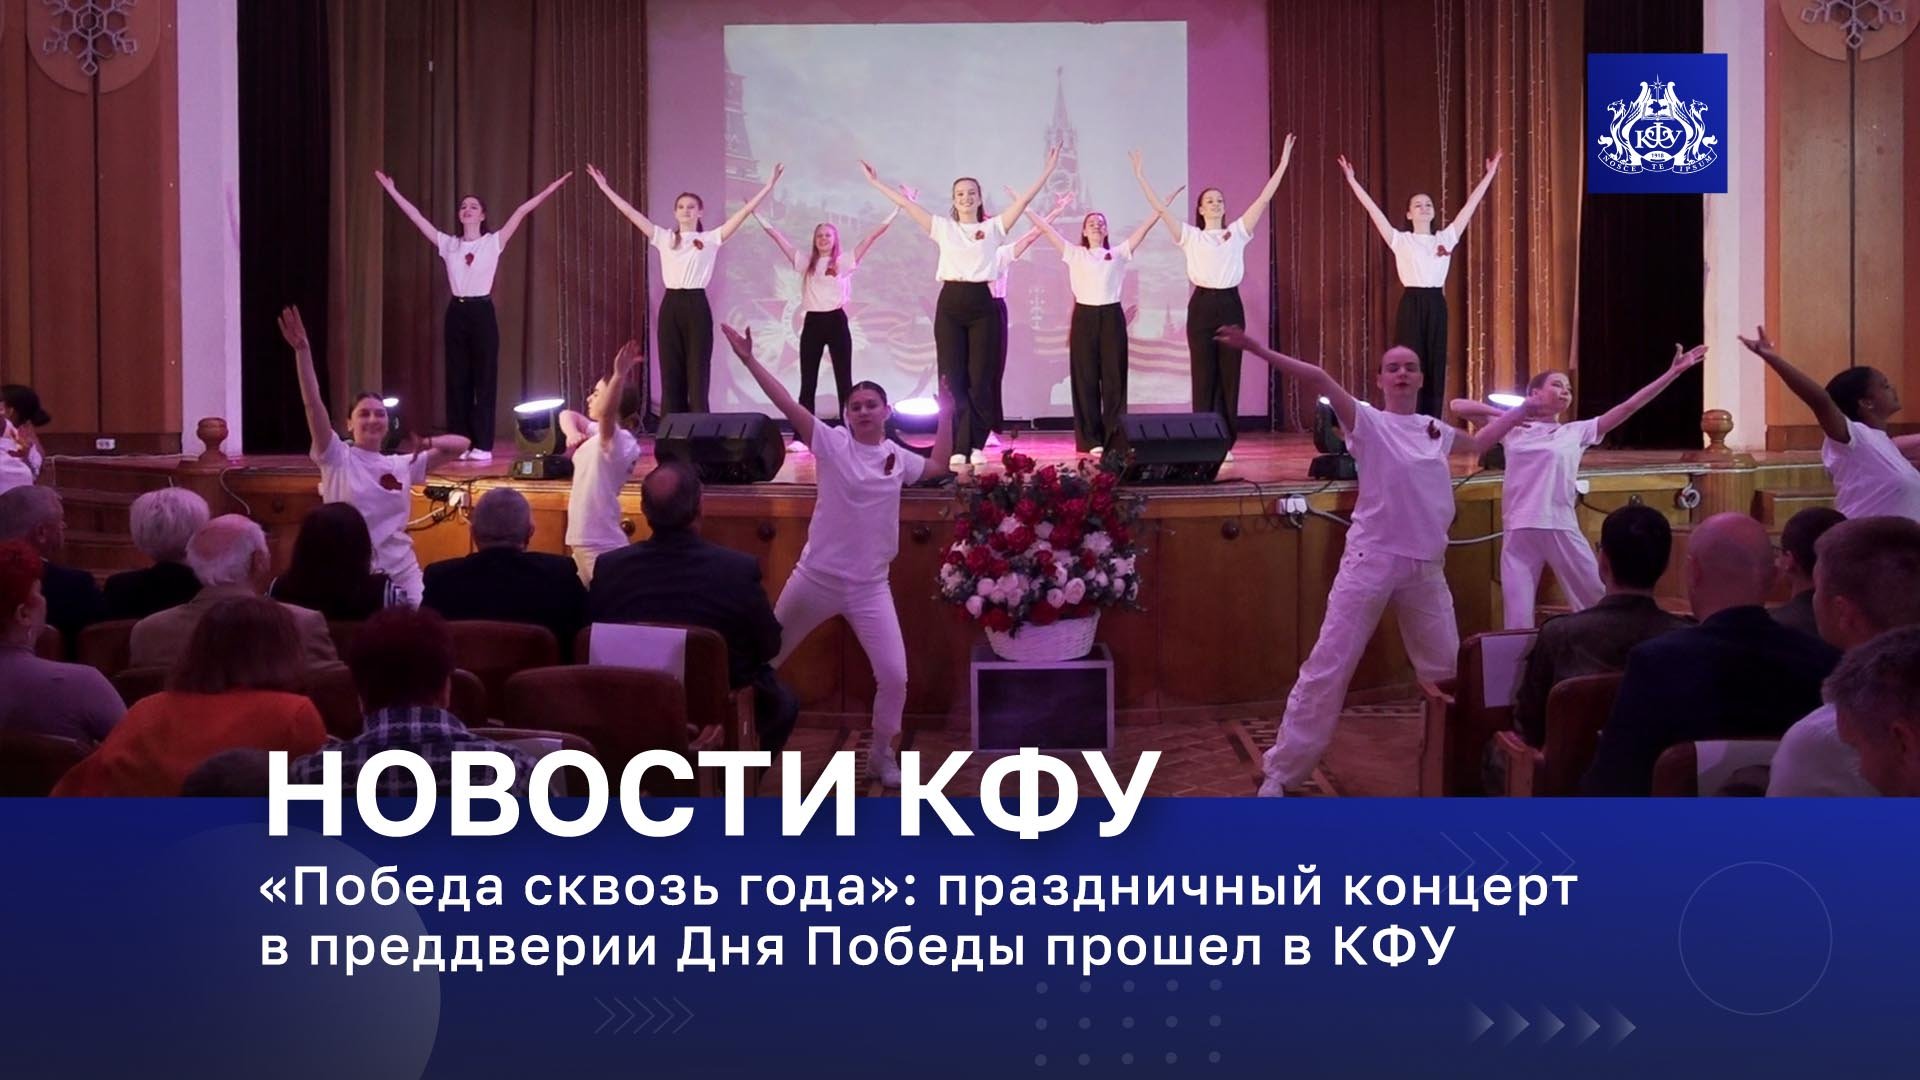 «Победа сквозь года»: праздничный концерт в преддверии Дня Победы прошел в КФУ